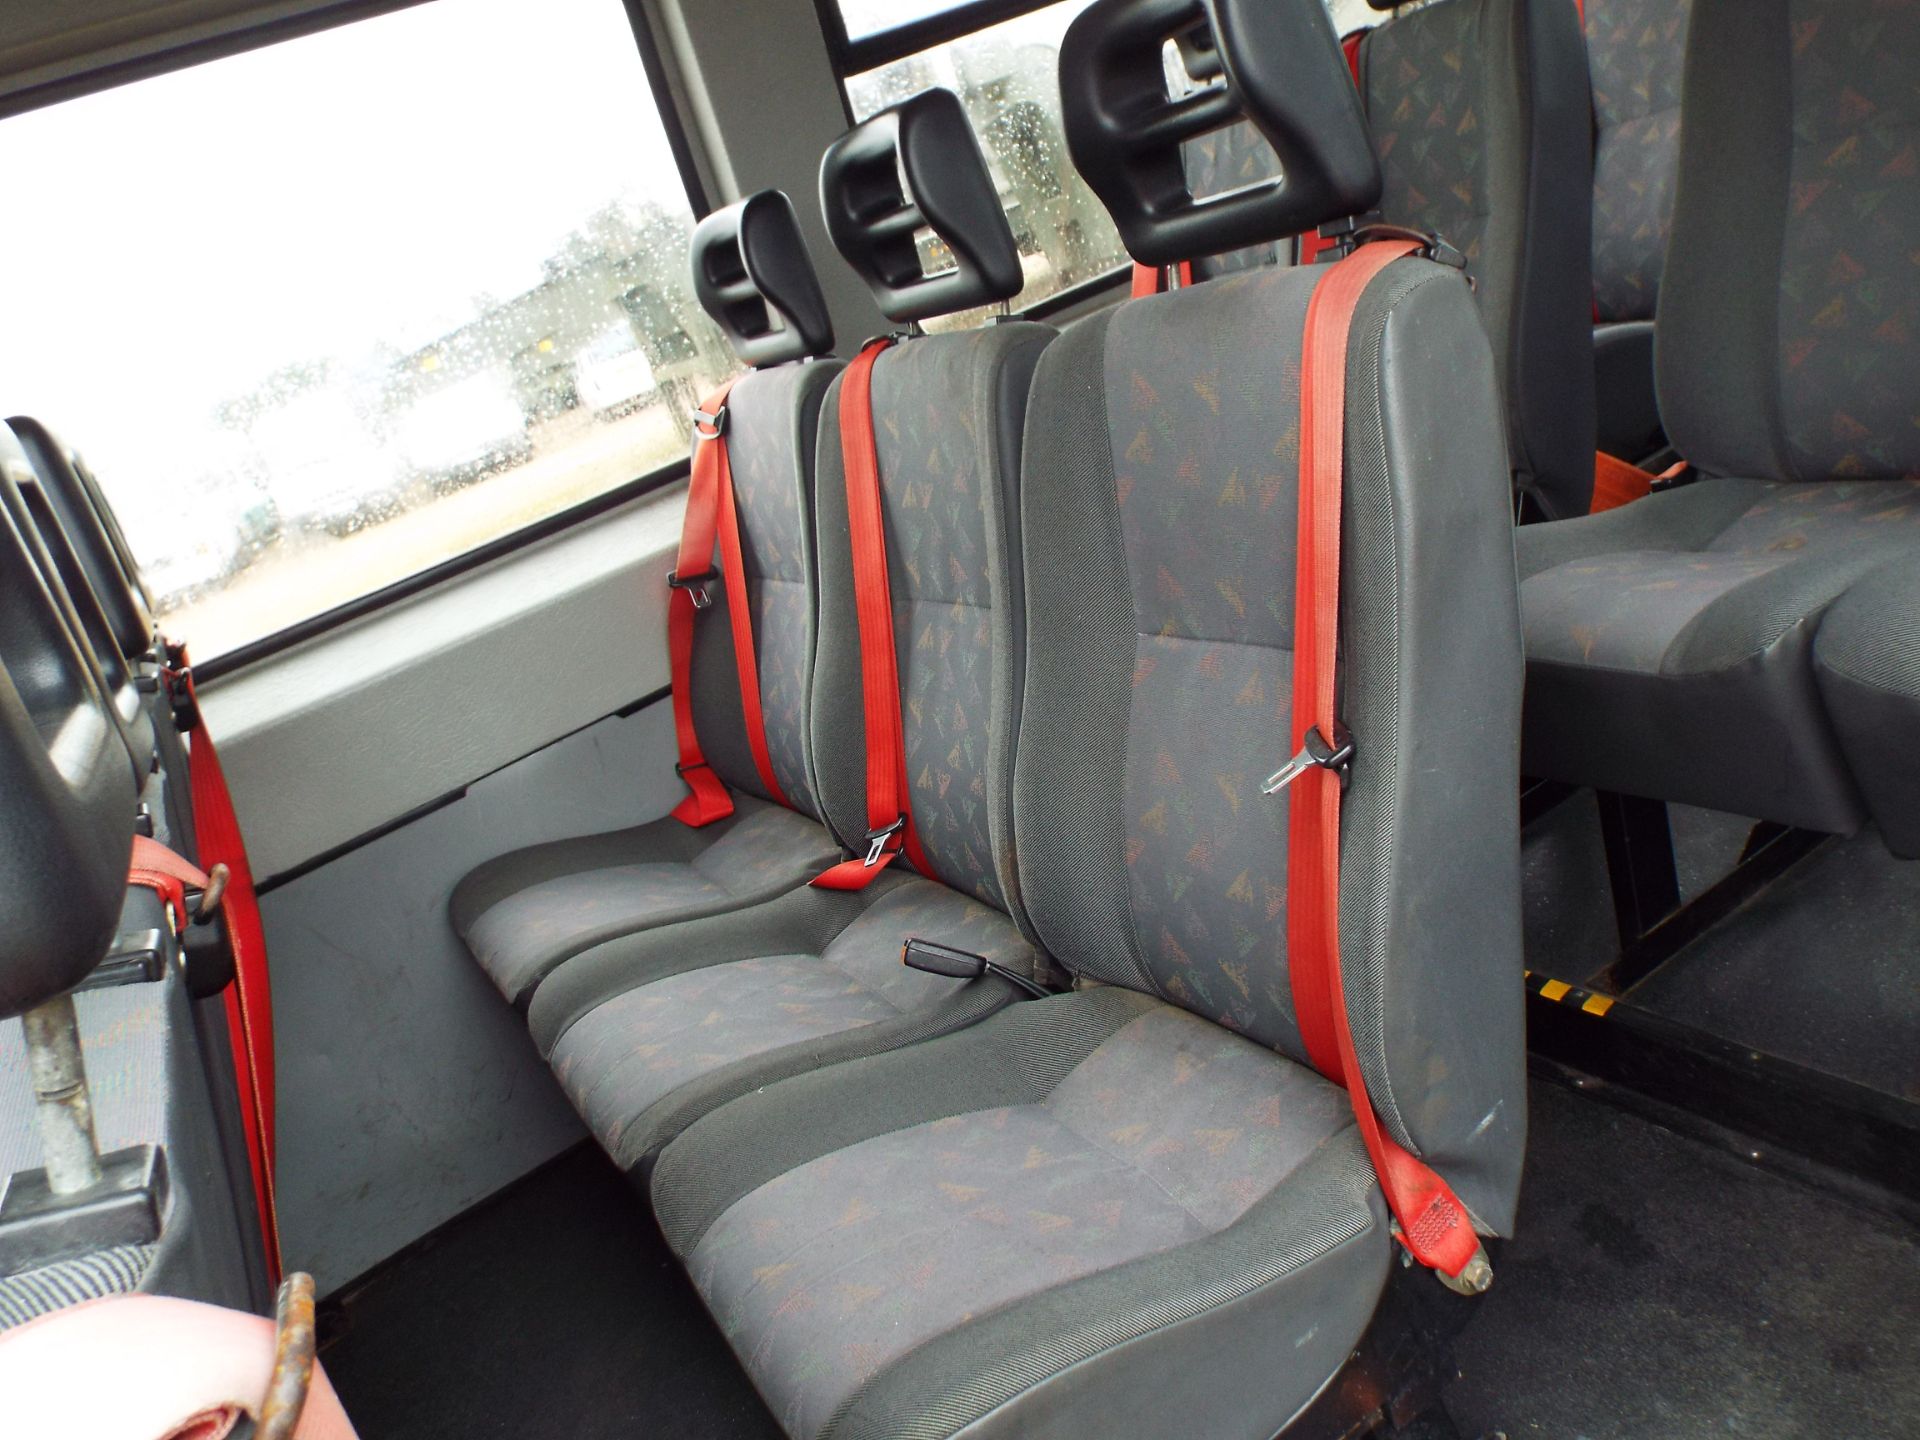 Citroen Relay 17 Seater Minibus - Image 14 of 17